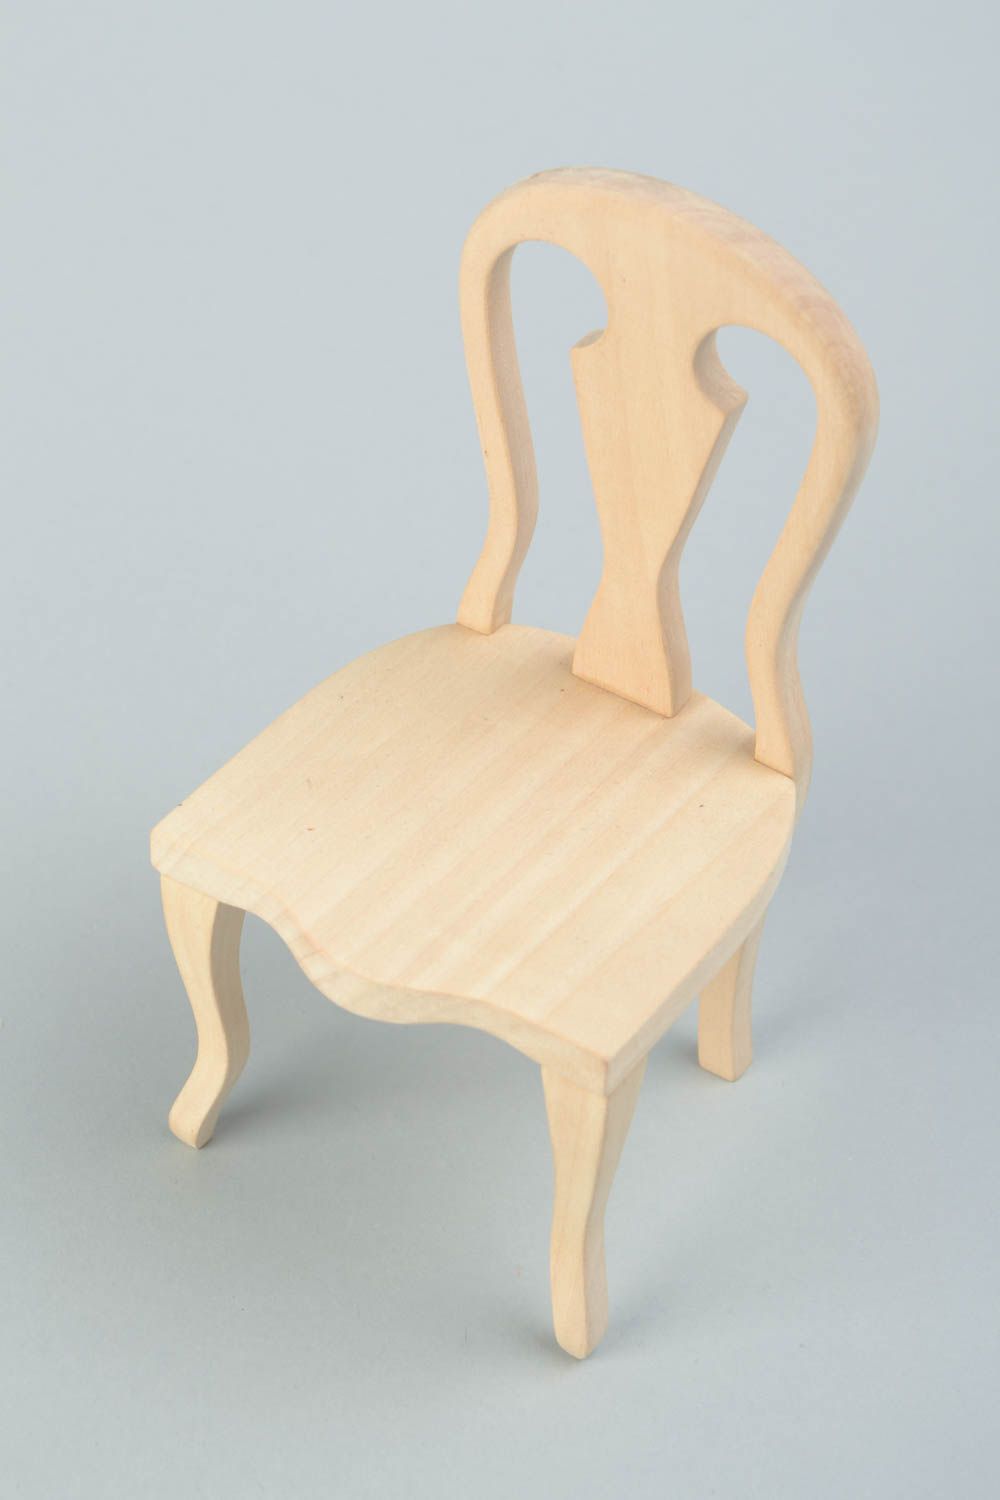 Hölzerner Rohling Stuhl zum Bemalen oder für Decoupage für Puppen Handarbeit foto 1